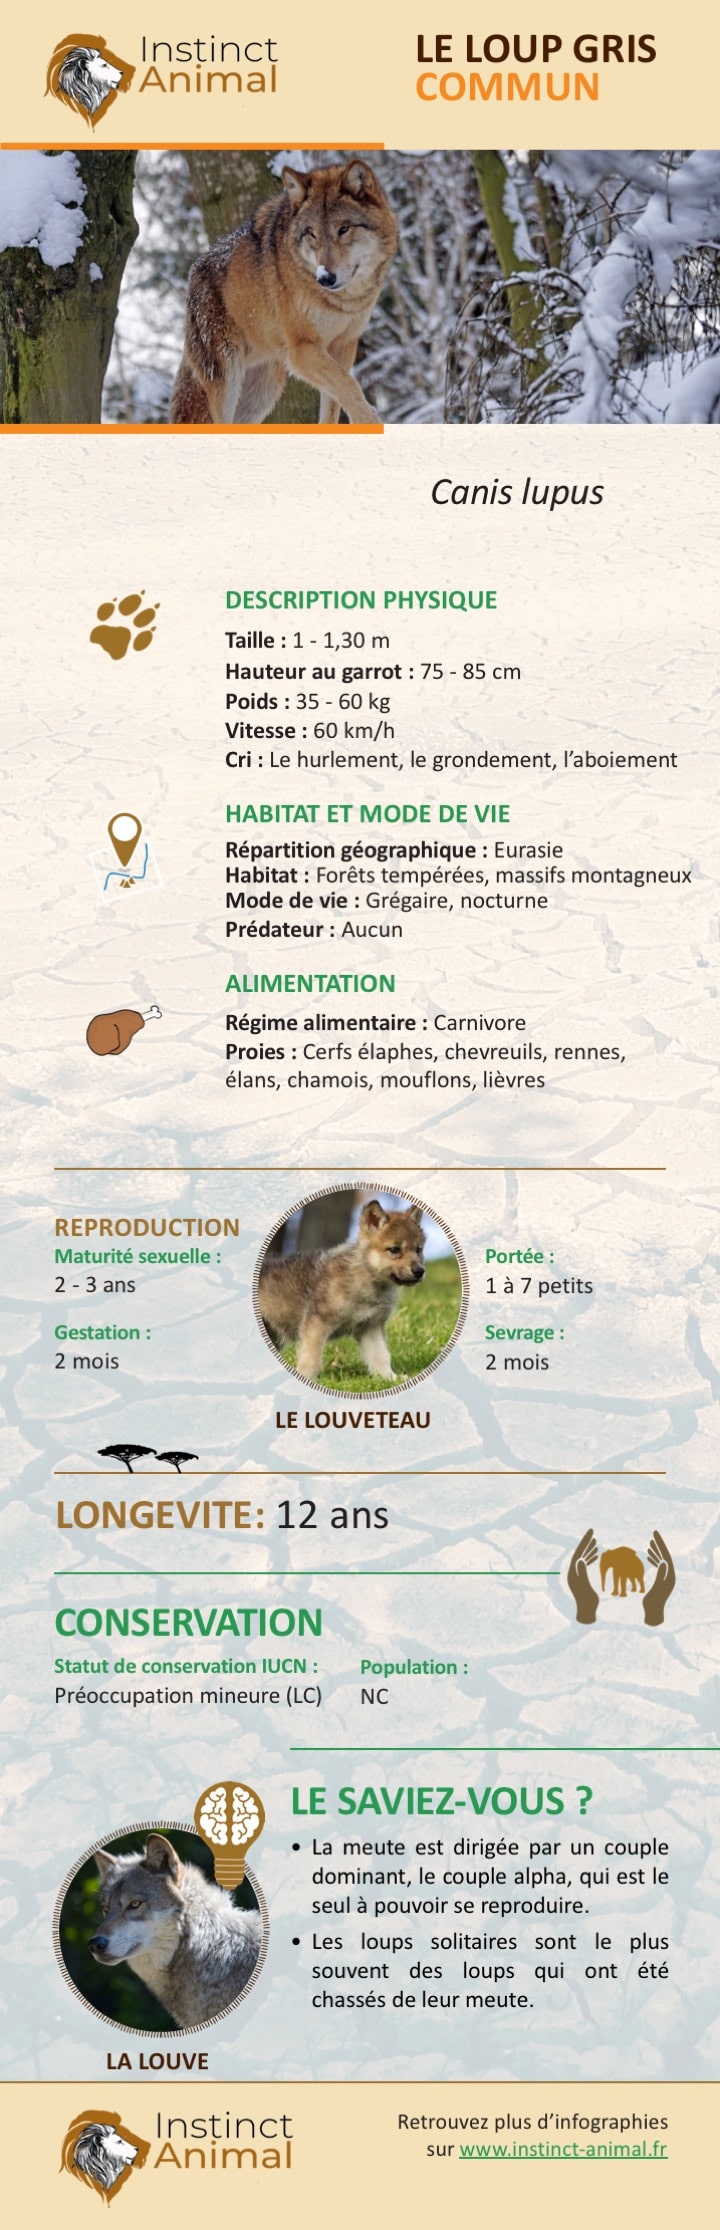 Description du loup gris commun - Infographie - Instinct Animal